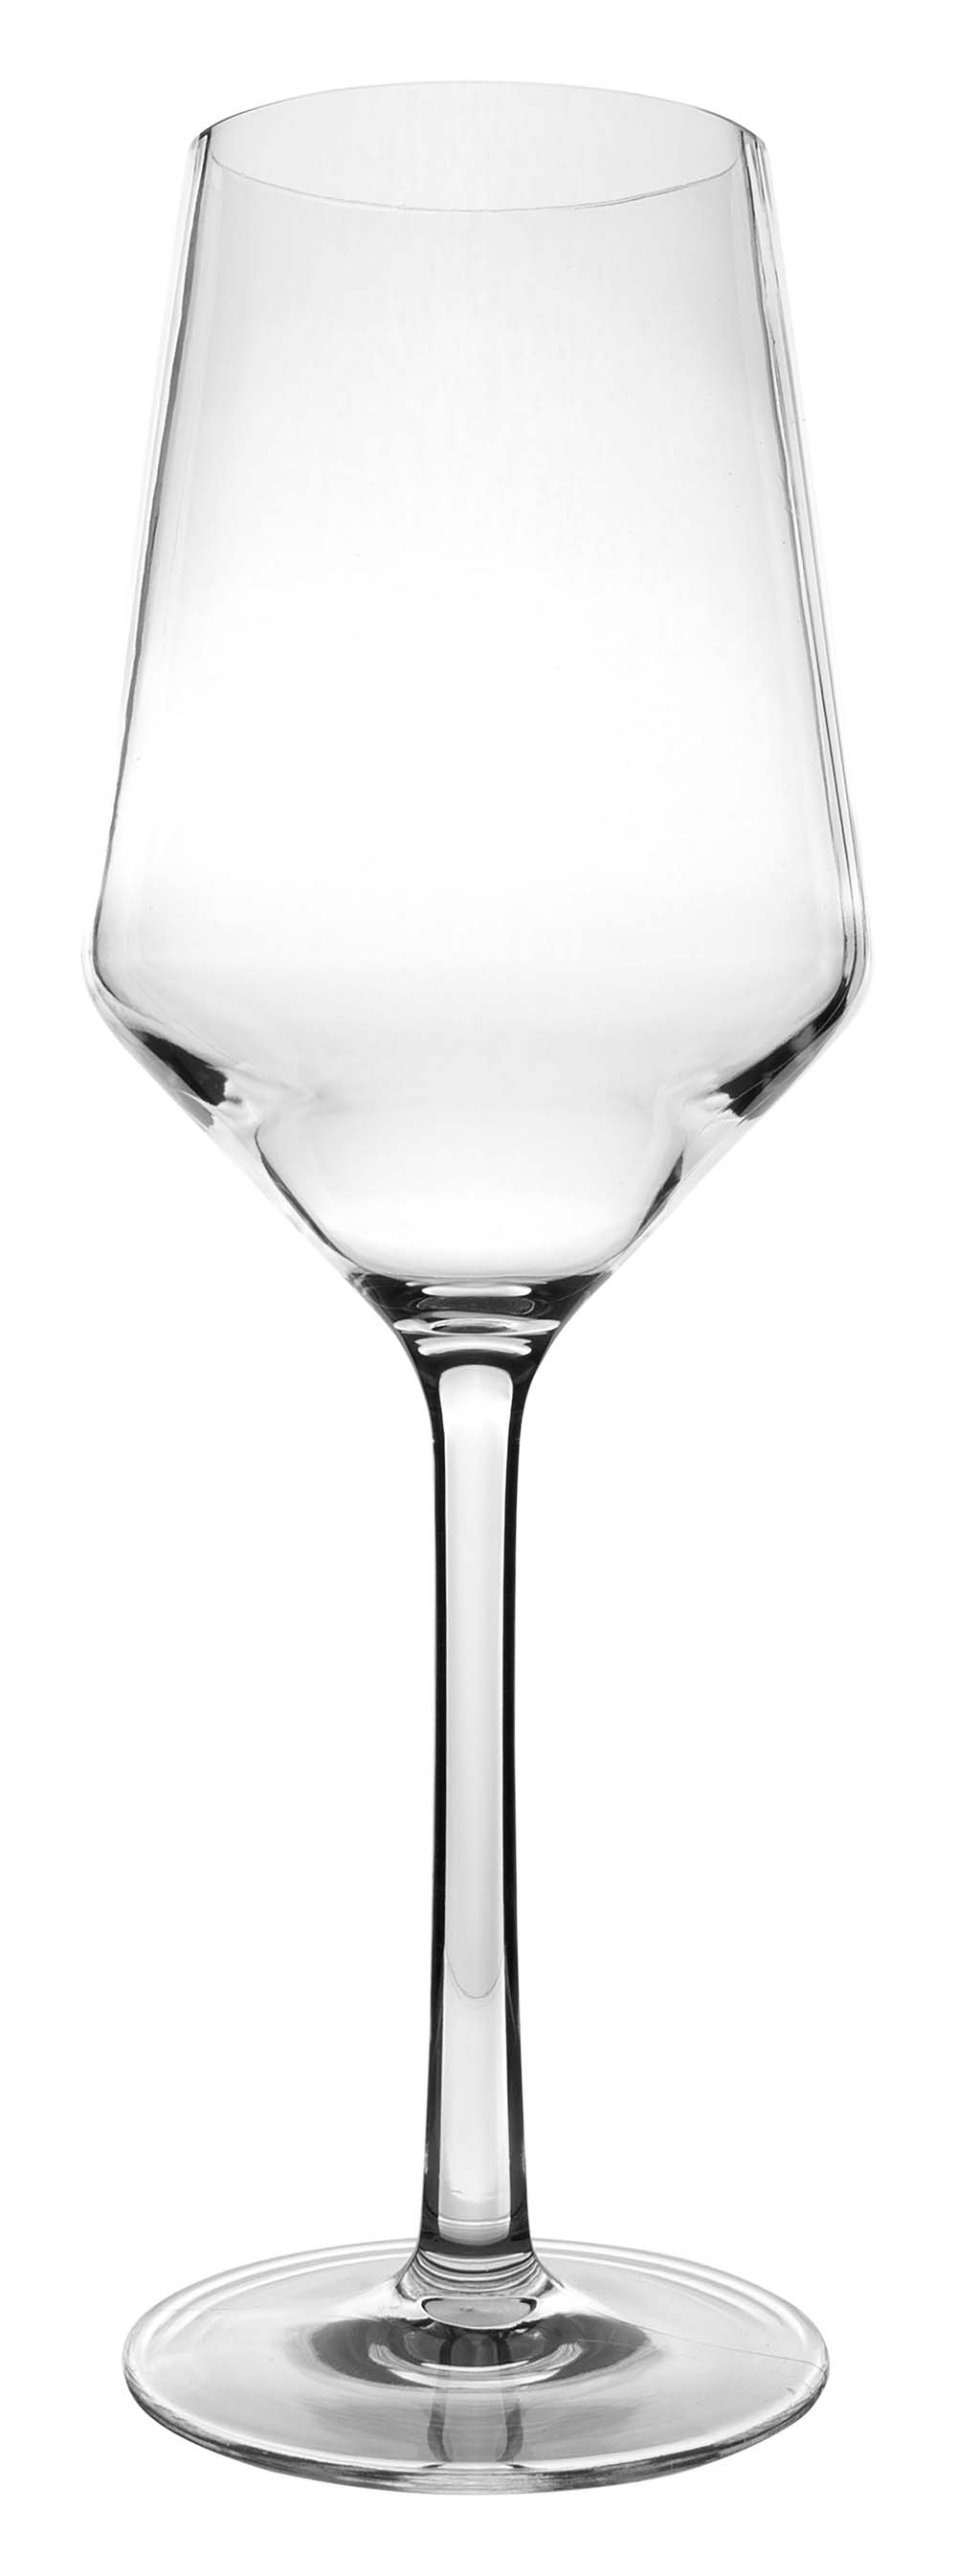 6101464 Una copa de vino blanco de lujo casi irrompible con un diseño redondo y elegante. Apto para lavavajillas, ligero y aún mejor resistente a los arañazos. Fabricado en tritán resistente. Un juego de 2 vasos. Los vasos no contienen BPA.